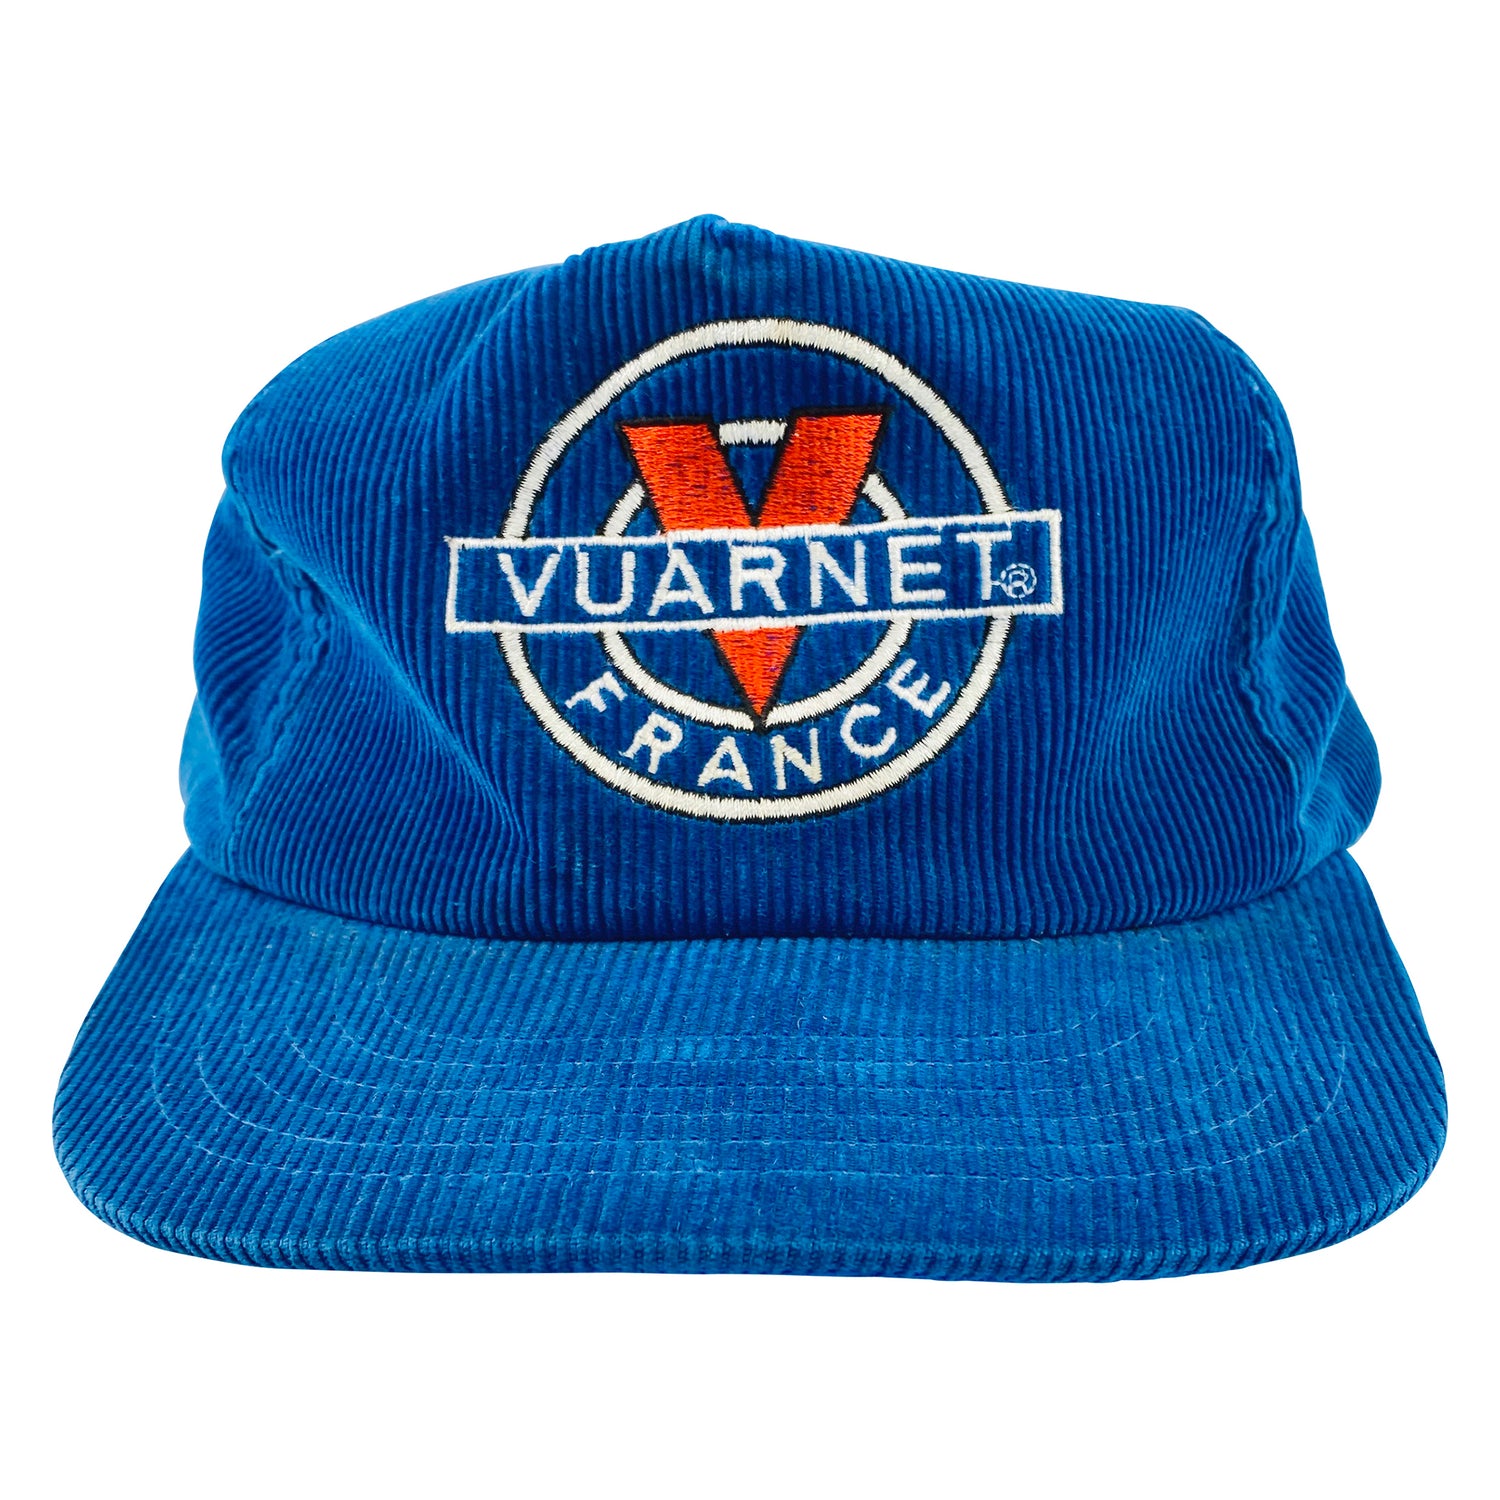 VINTAGE VUARNET HAT